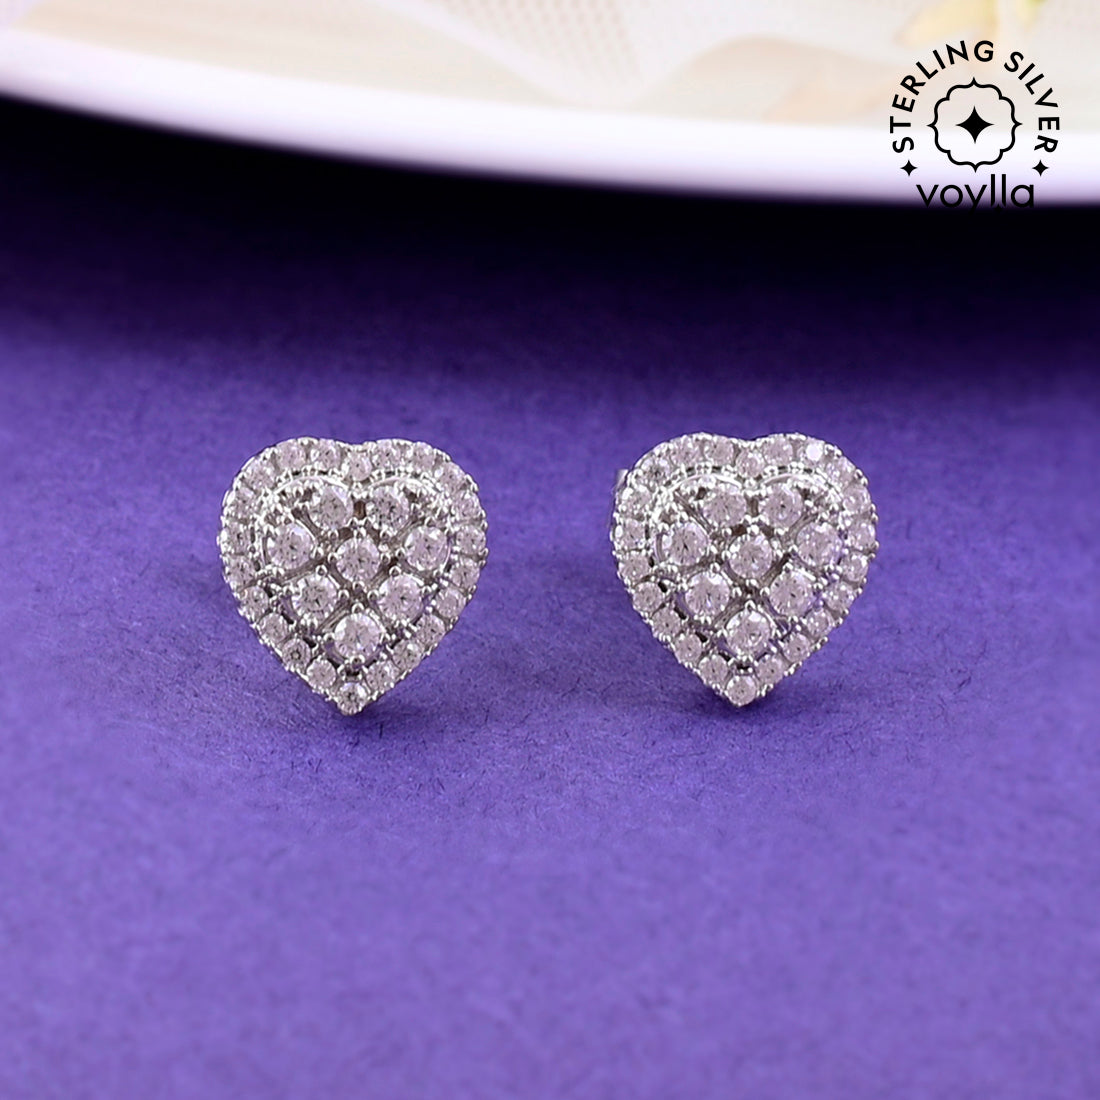 Buy heart earrings for women in silver with diamond look AD